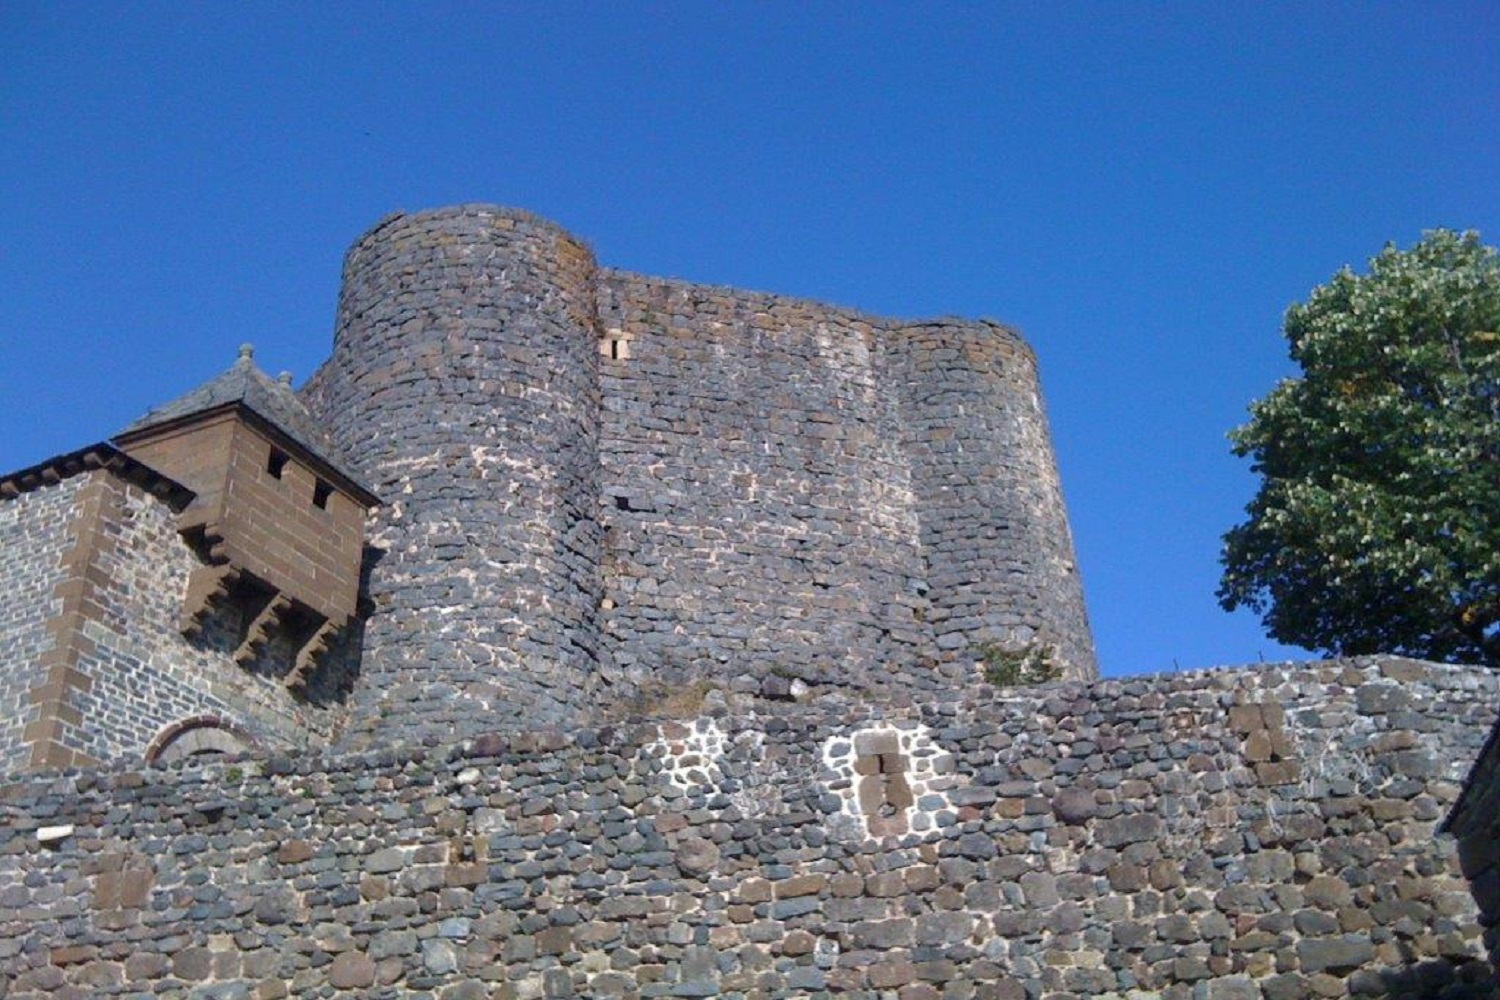 Citadelle vue de côté avec trois archères canonnières. - Château de Bouzols